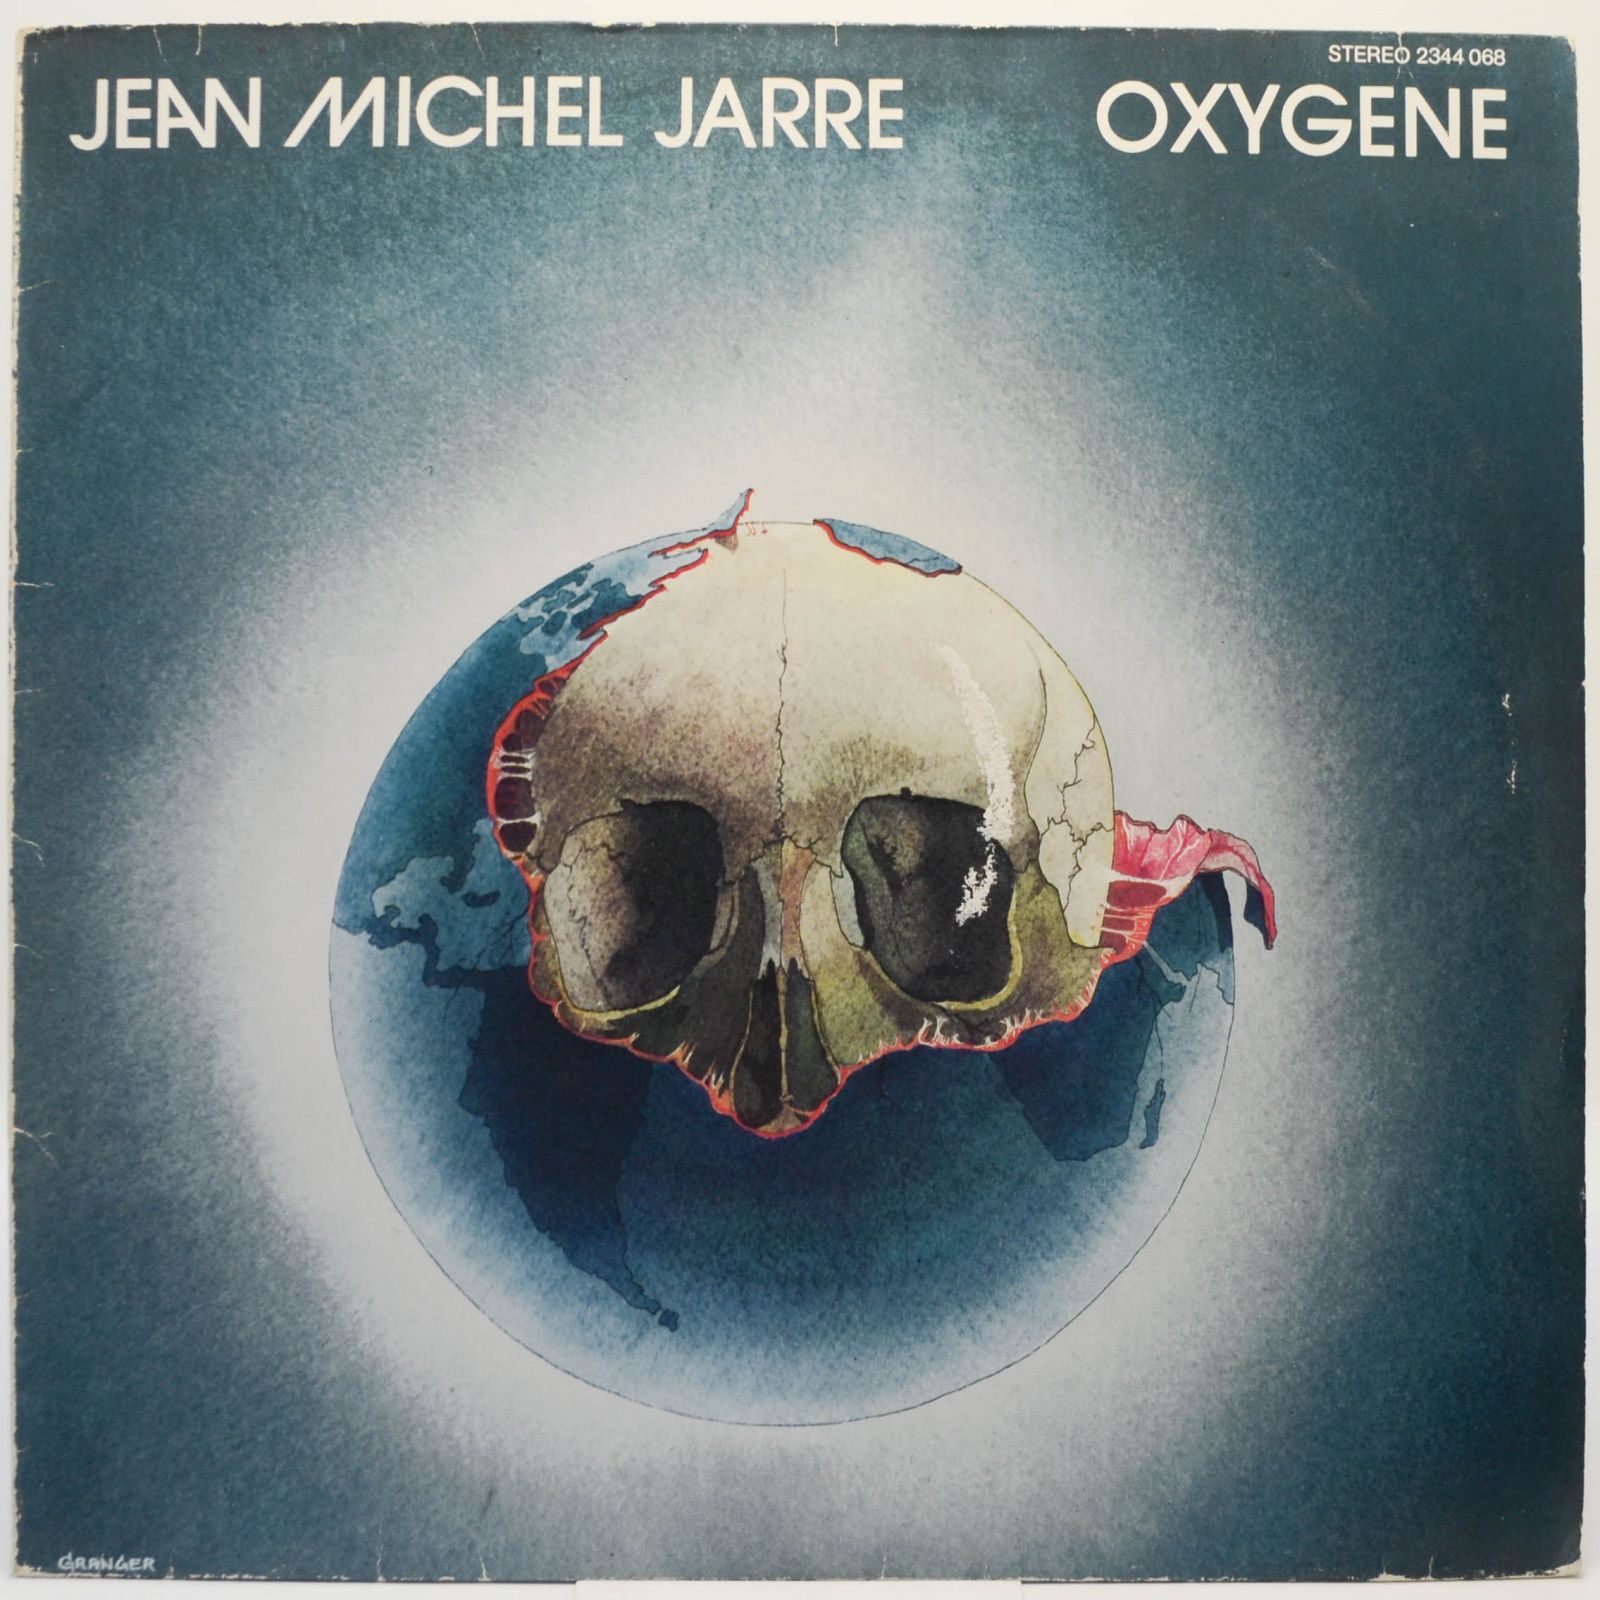 Oxygene, 1976